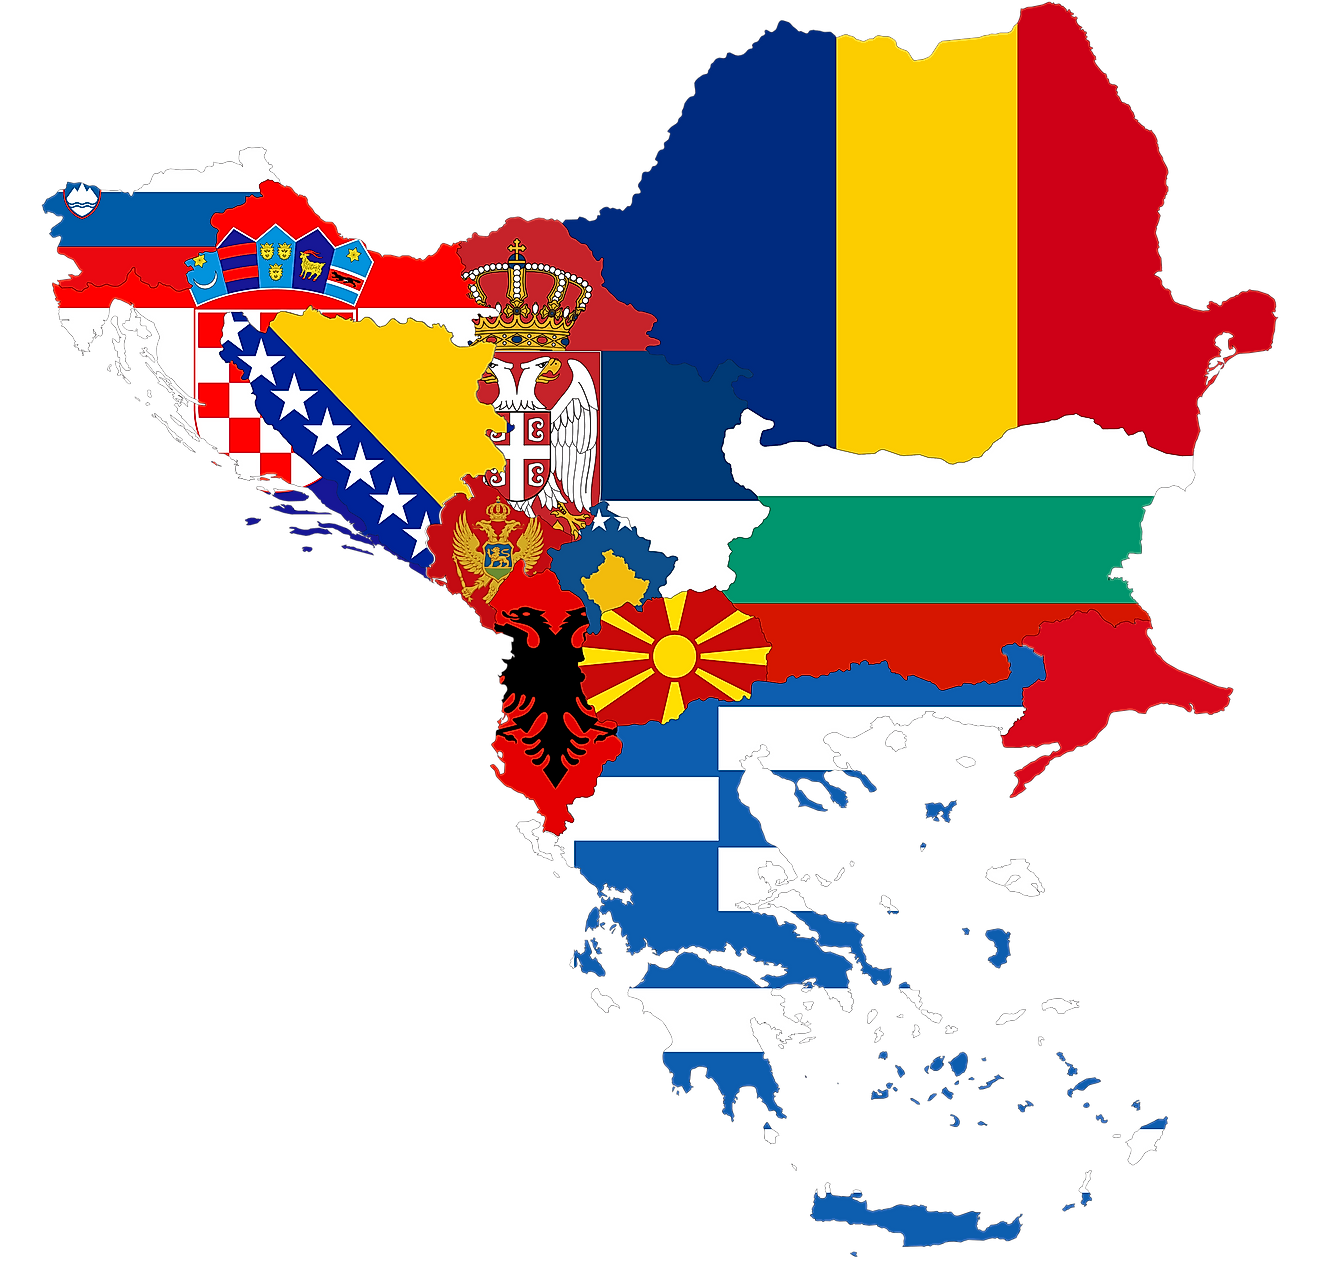 Balkan Peninsula Countries